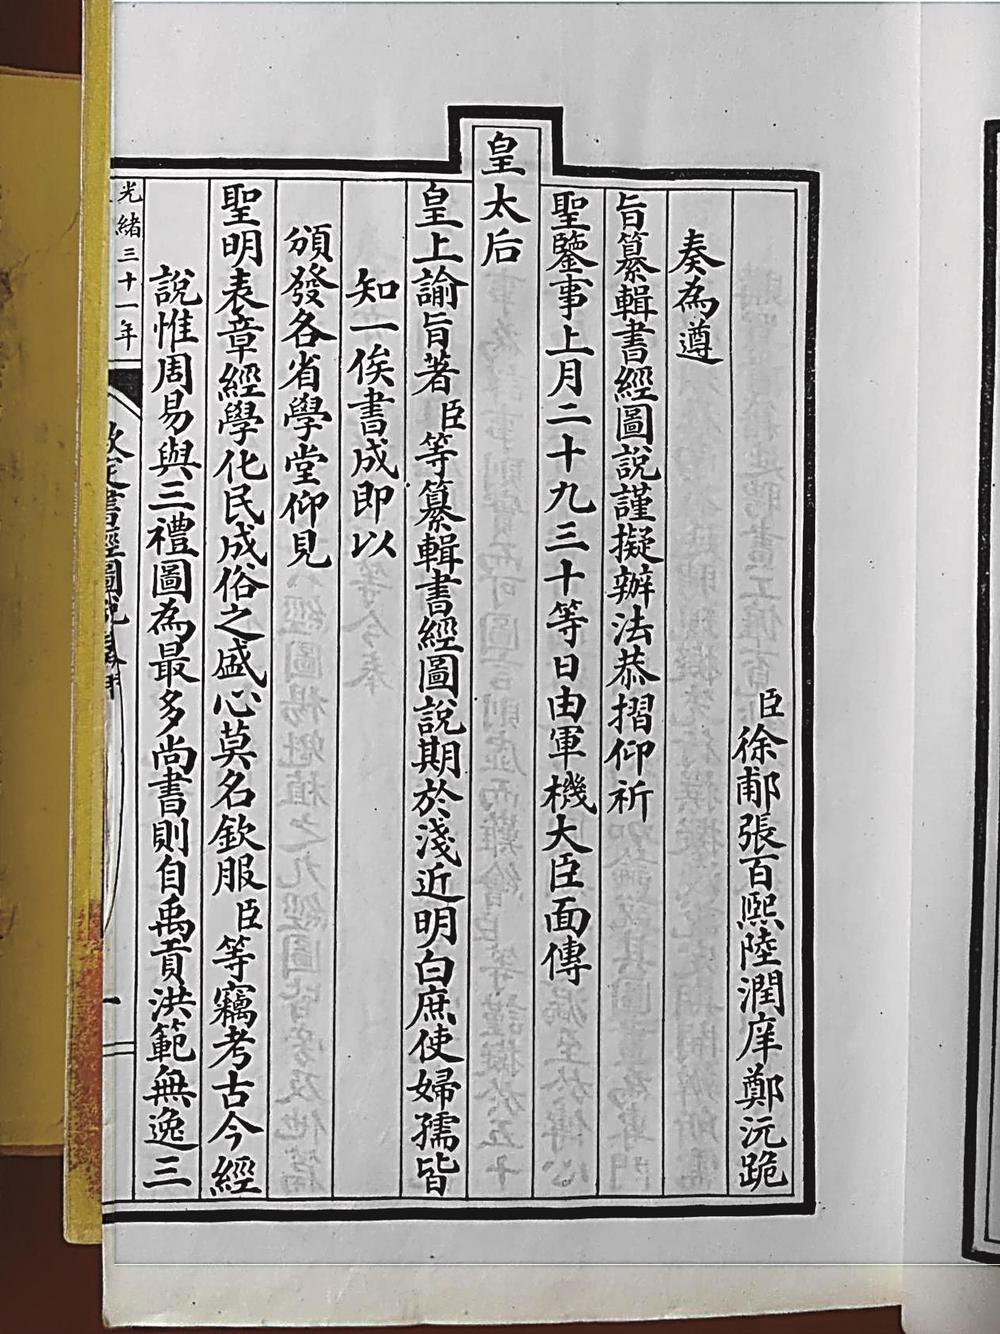 甘州区图书馆馆藏古籍 《钦定书经图说（五十卷）》